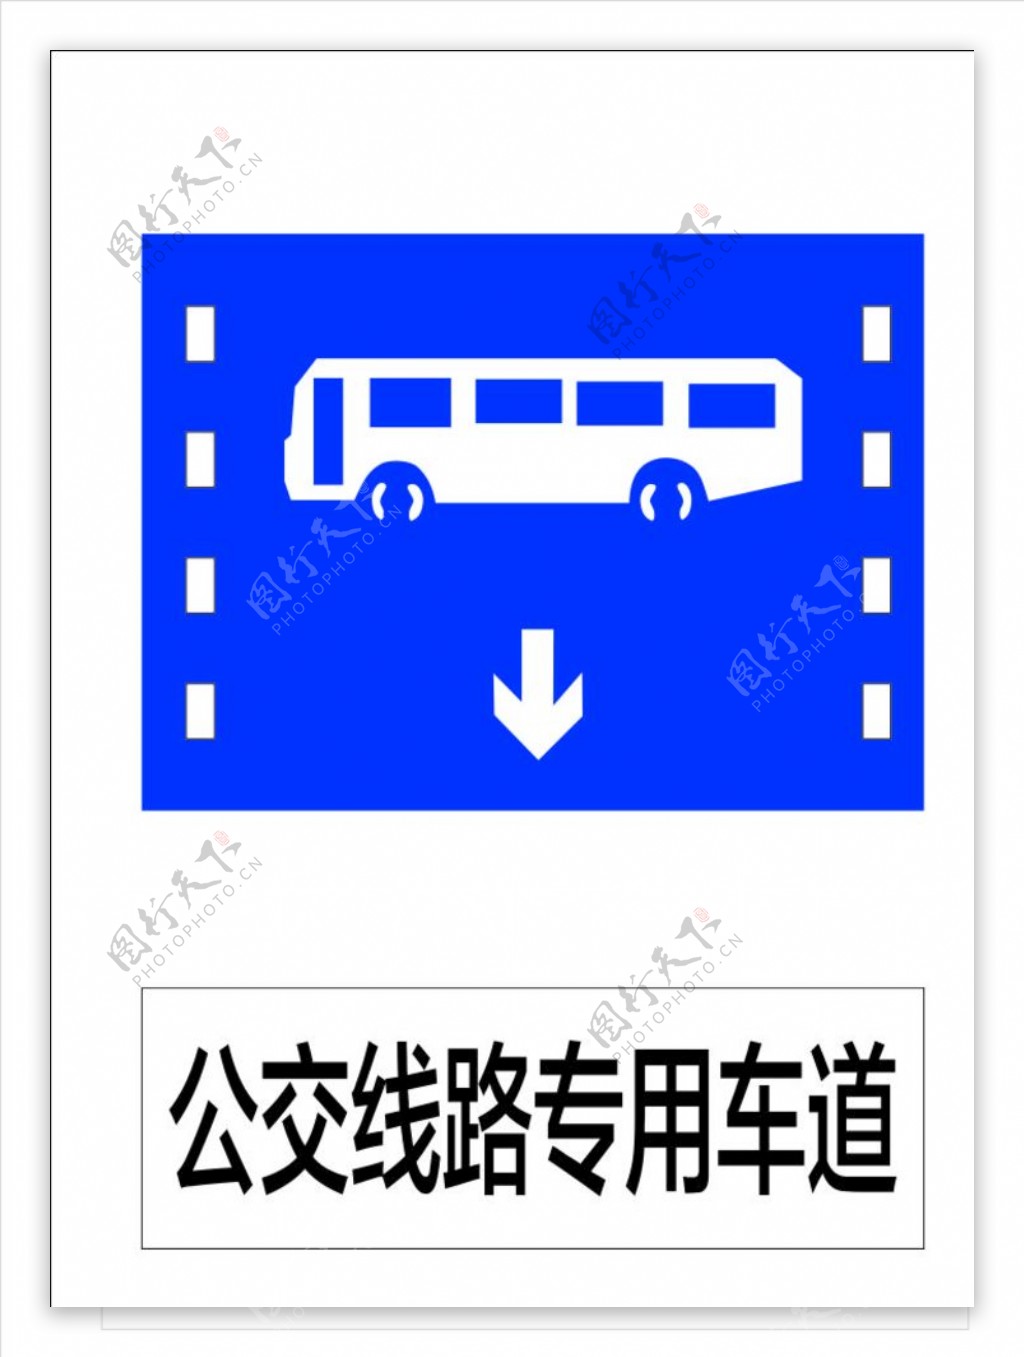 公交线路专用车道